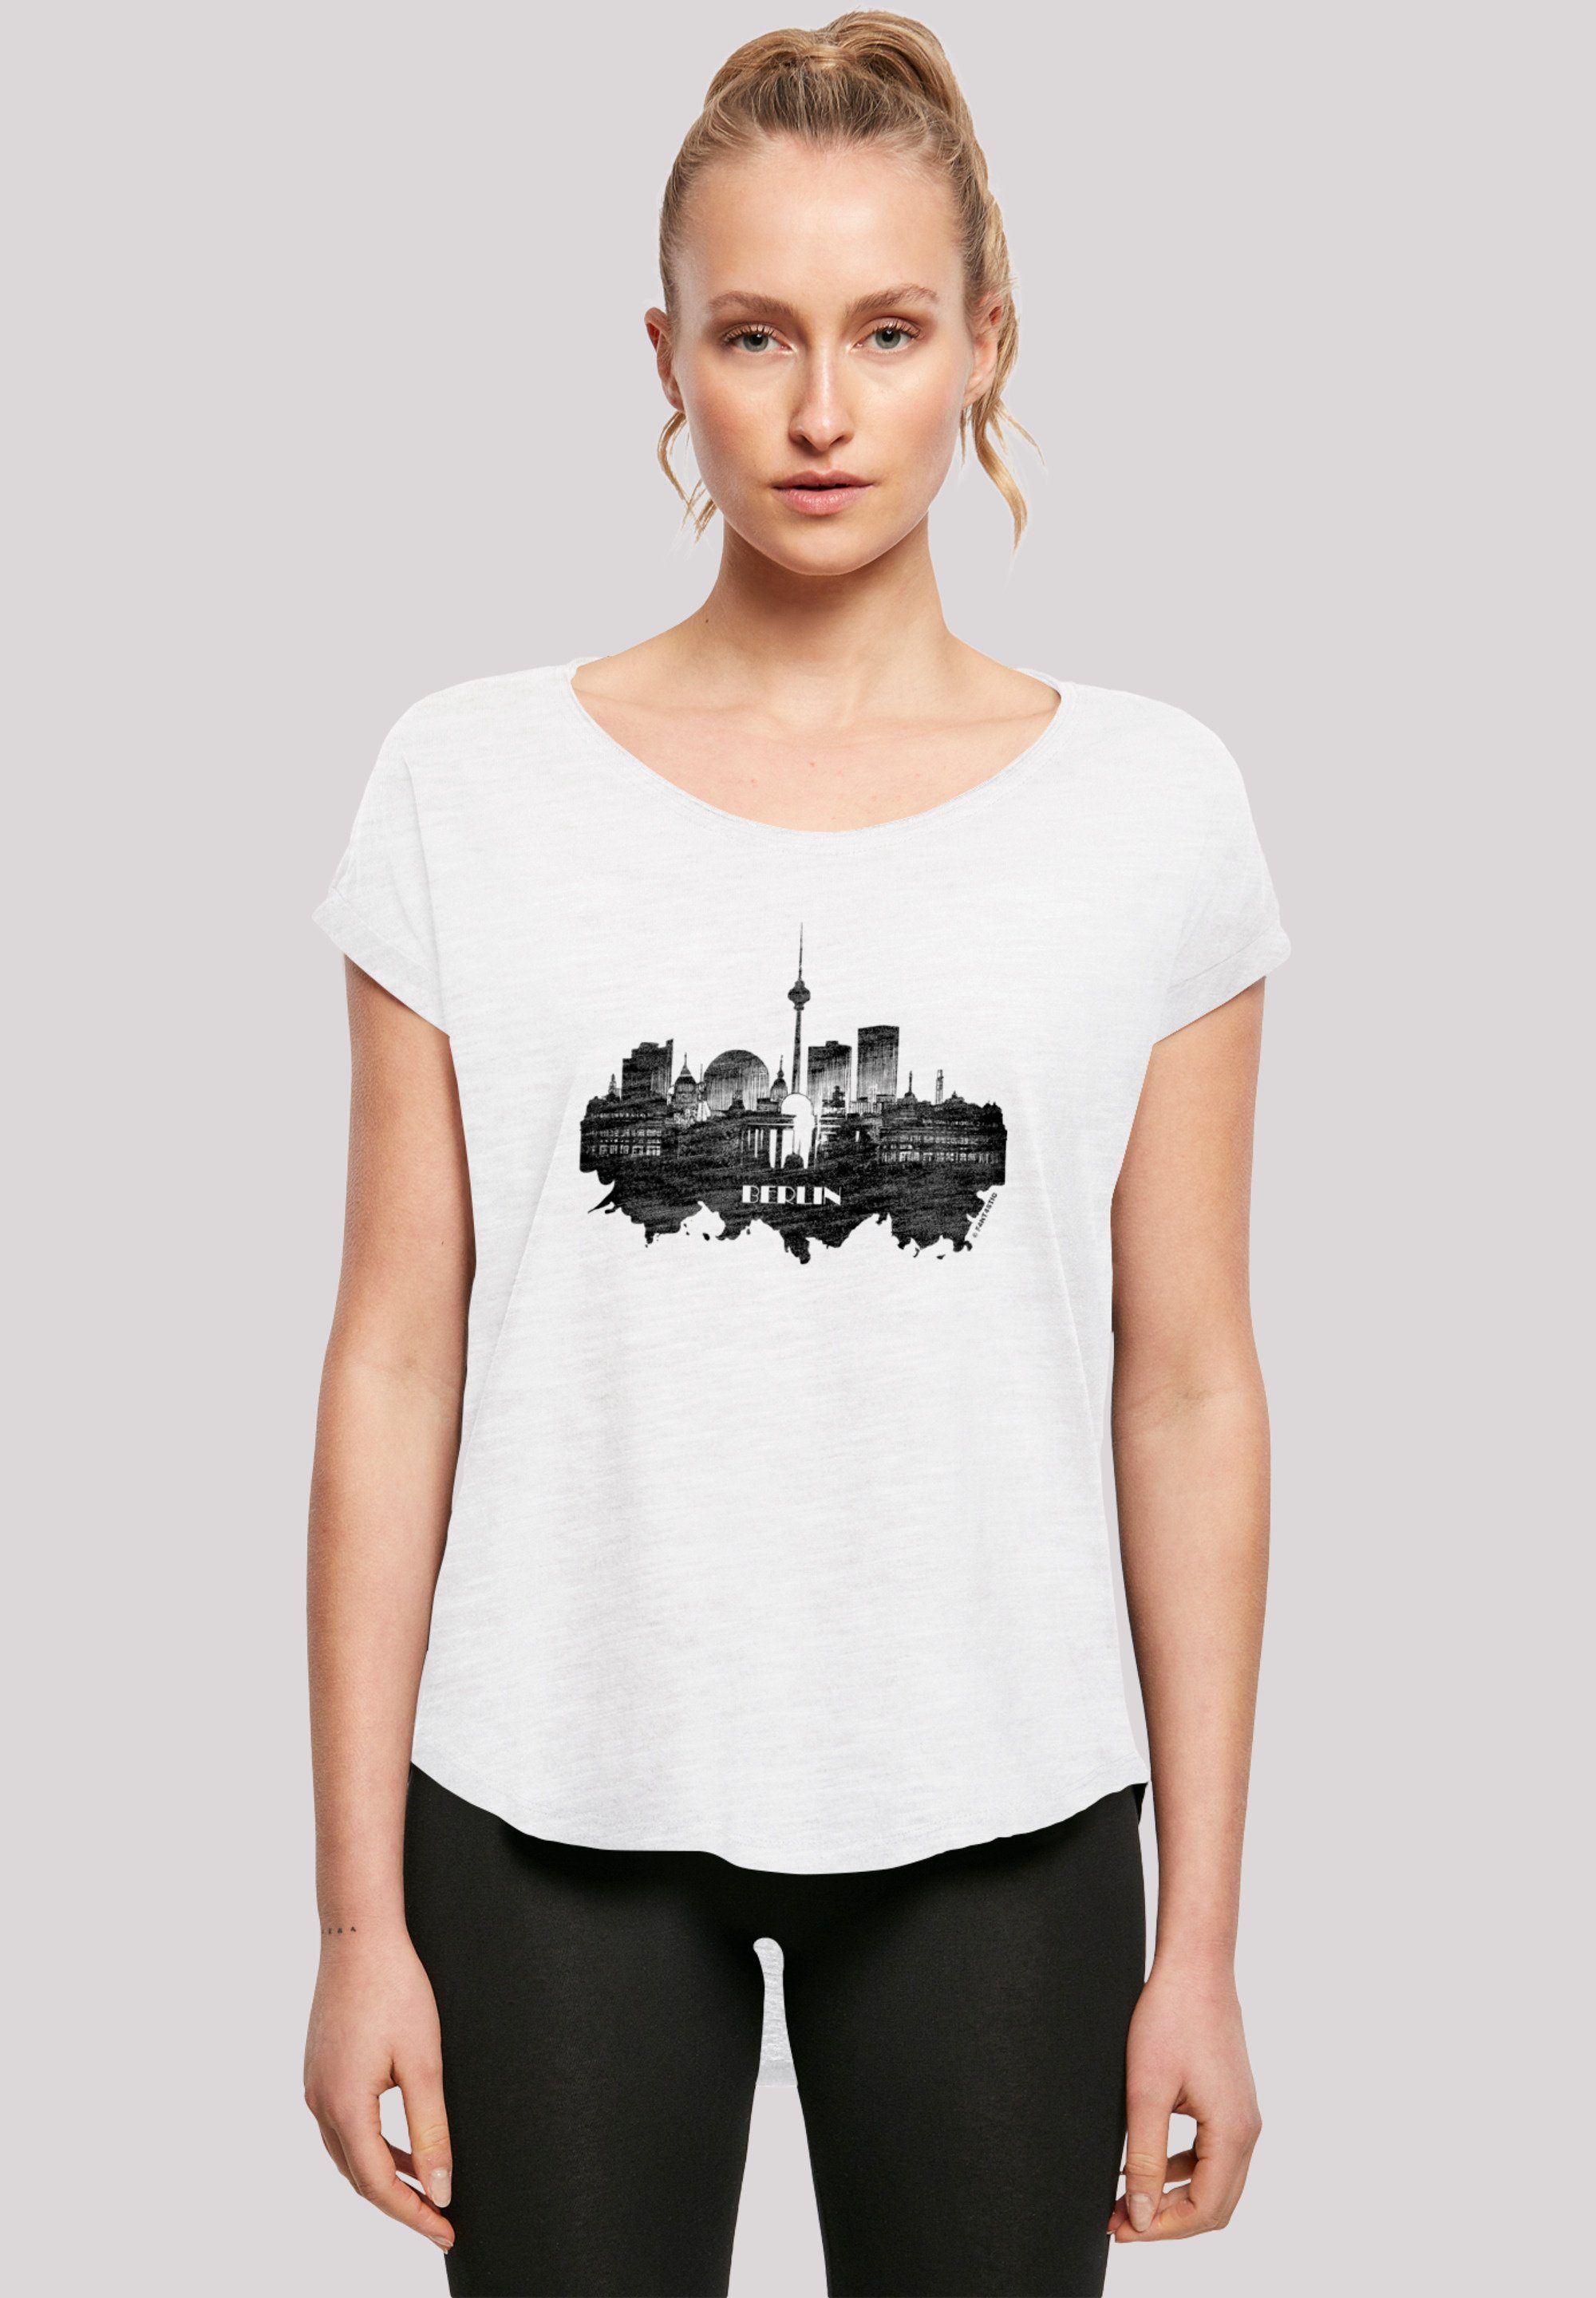 T-Shirt Berlin Print, lang F4NT4STIC - extra skyline Damen T-Shirt geschnittenes Cities Collection Hinten